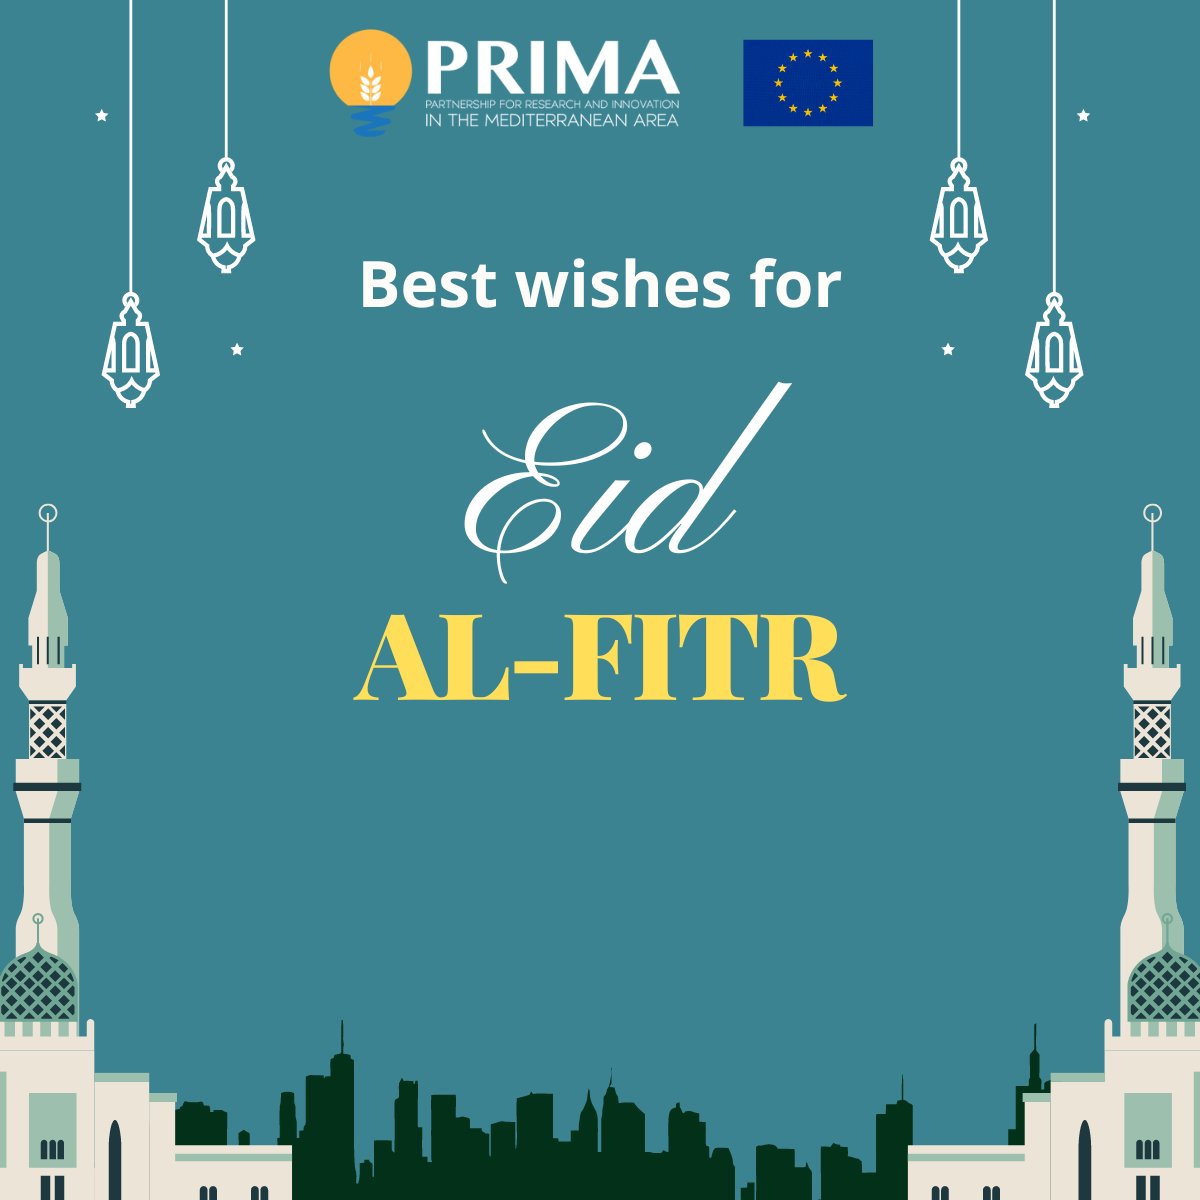 نتمنى لكم عيد فطر مبارك We wish an happy Eid Al-Fitr to all those celebrating!